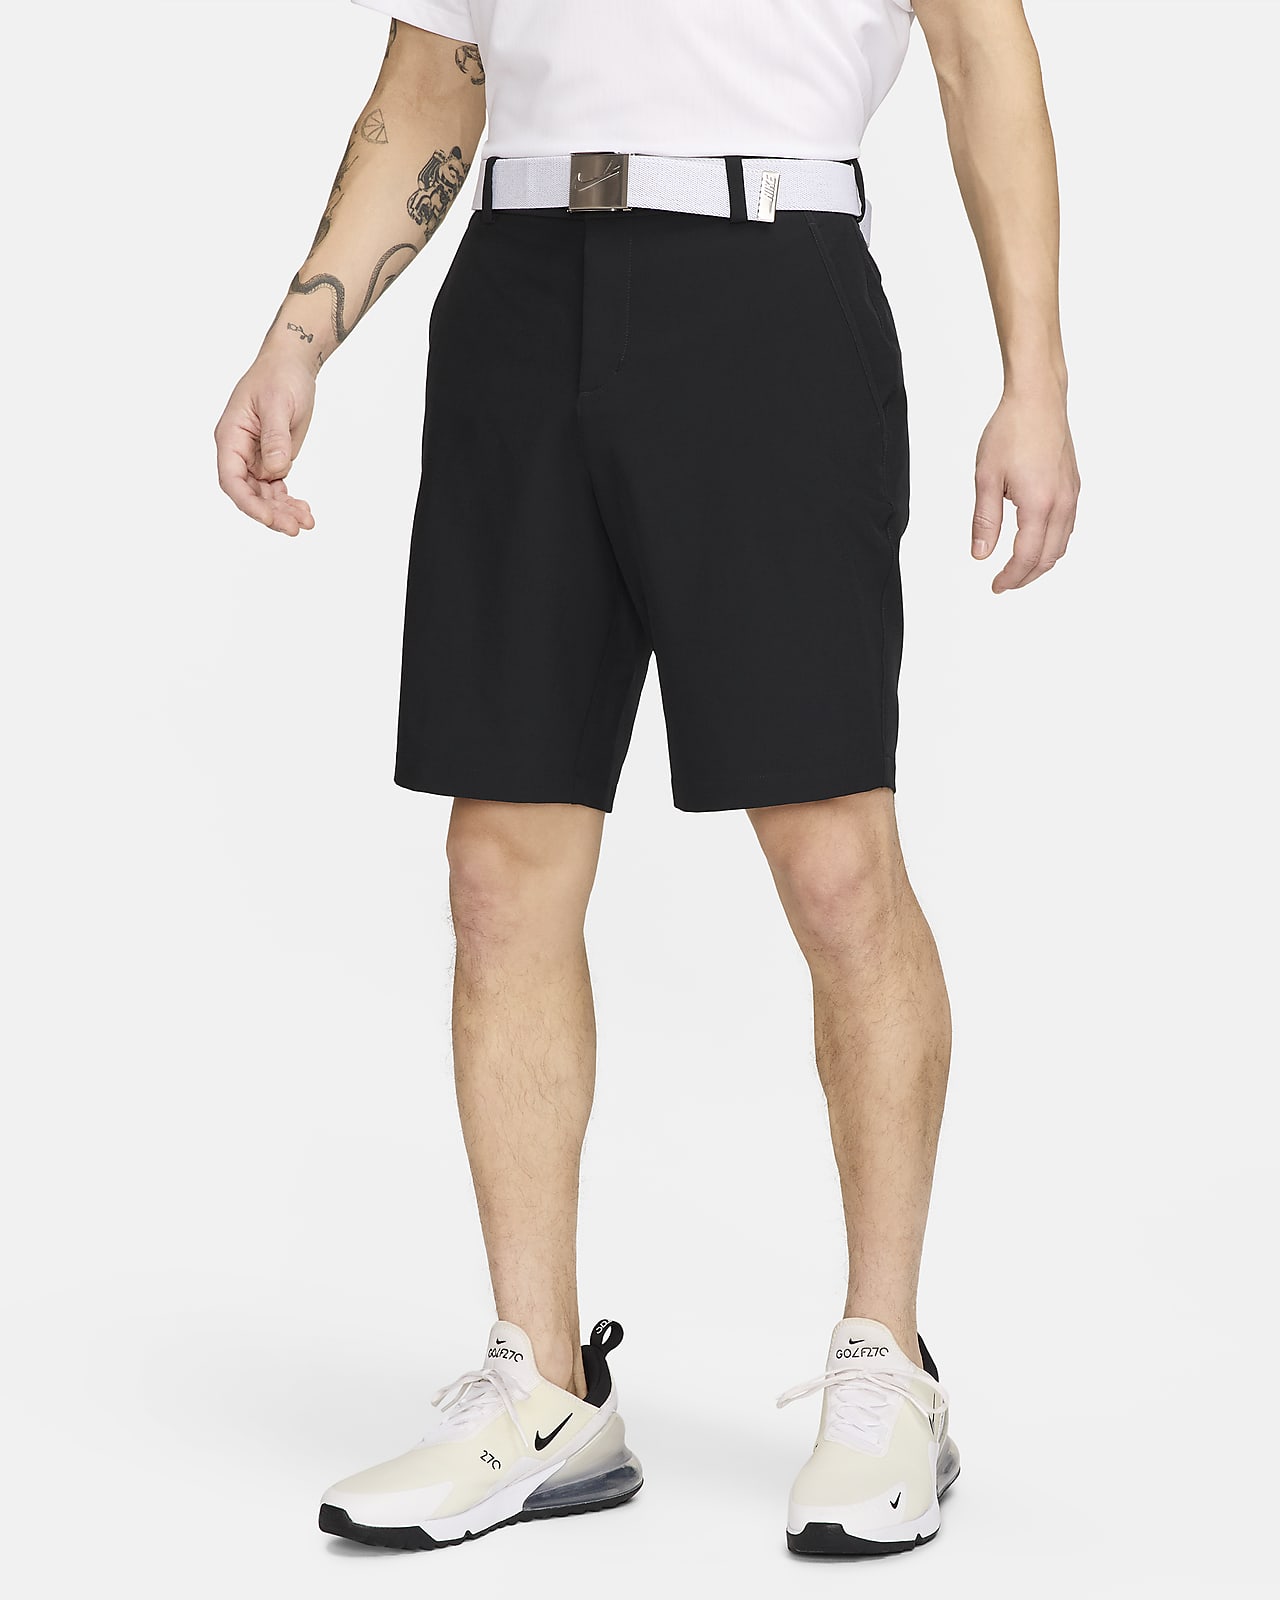 Nike Dri-FIT Men's Golf Shorts. Nike SG